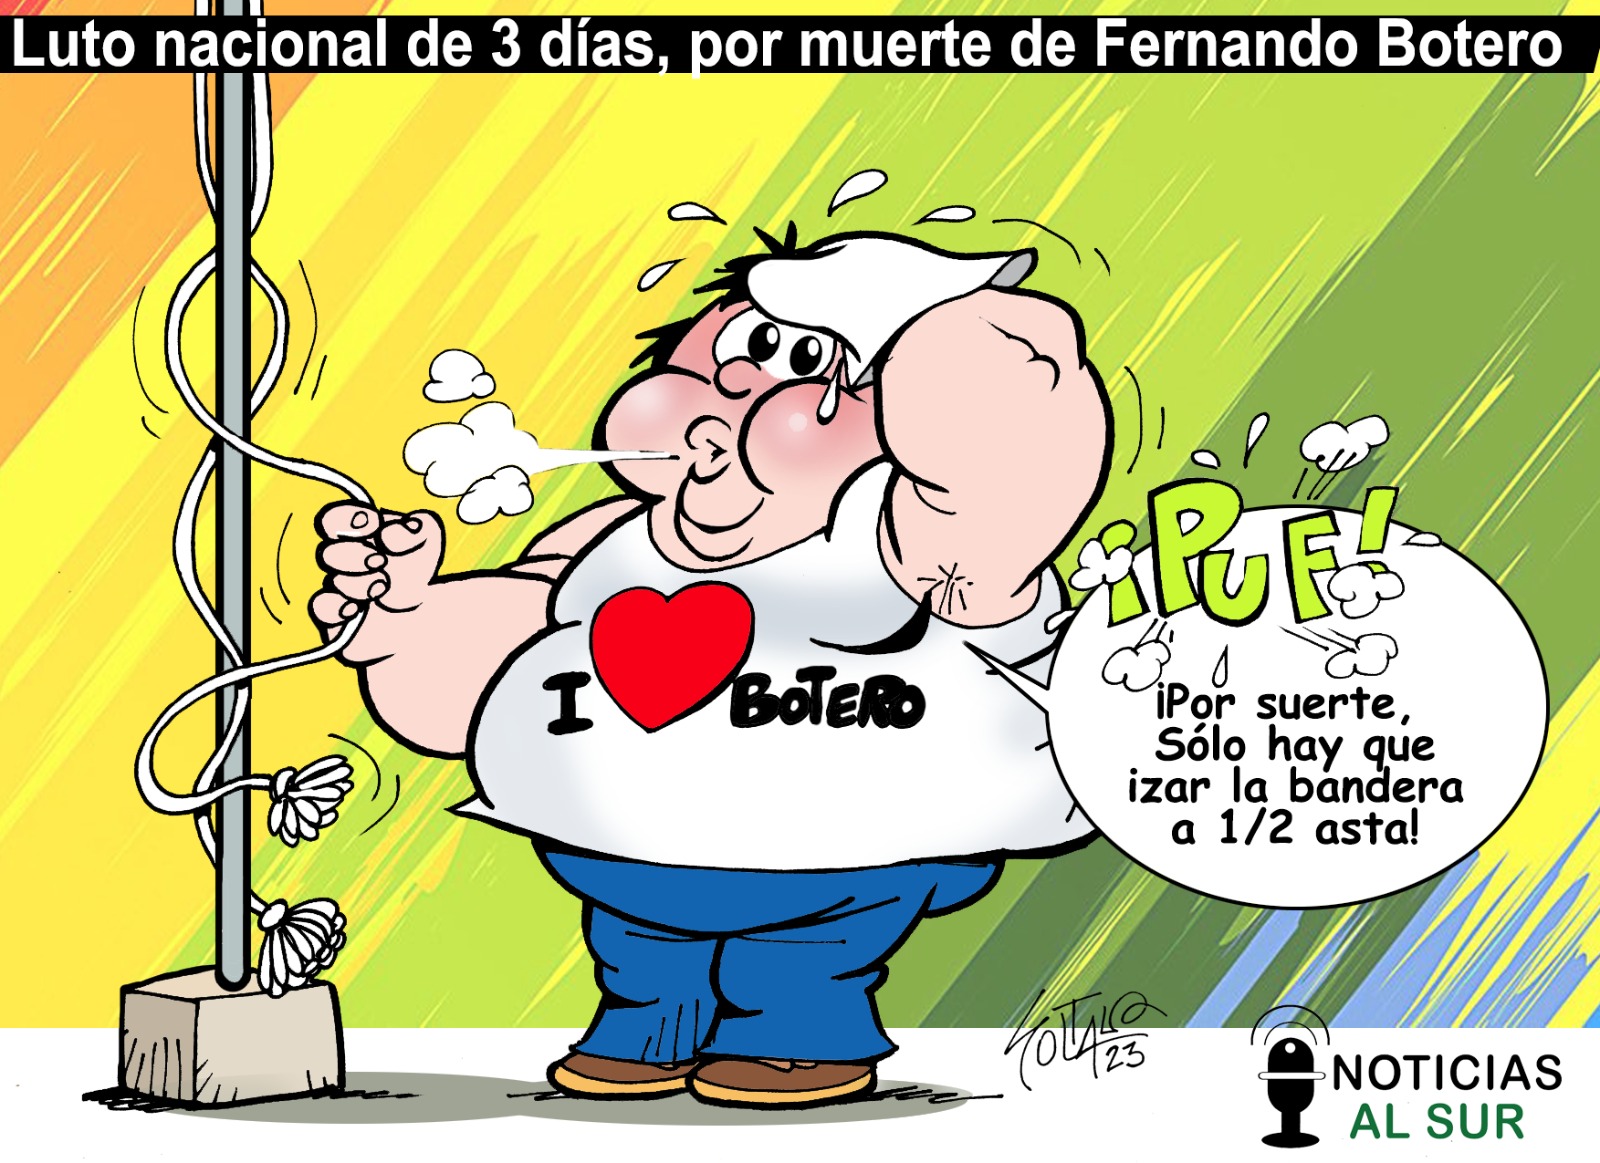 Luto nacional de 3 días, por muerte de Fernando Botero